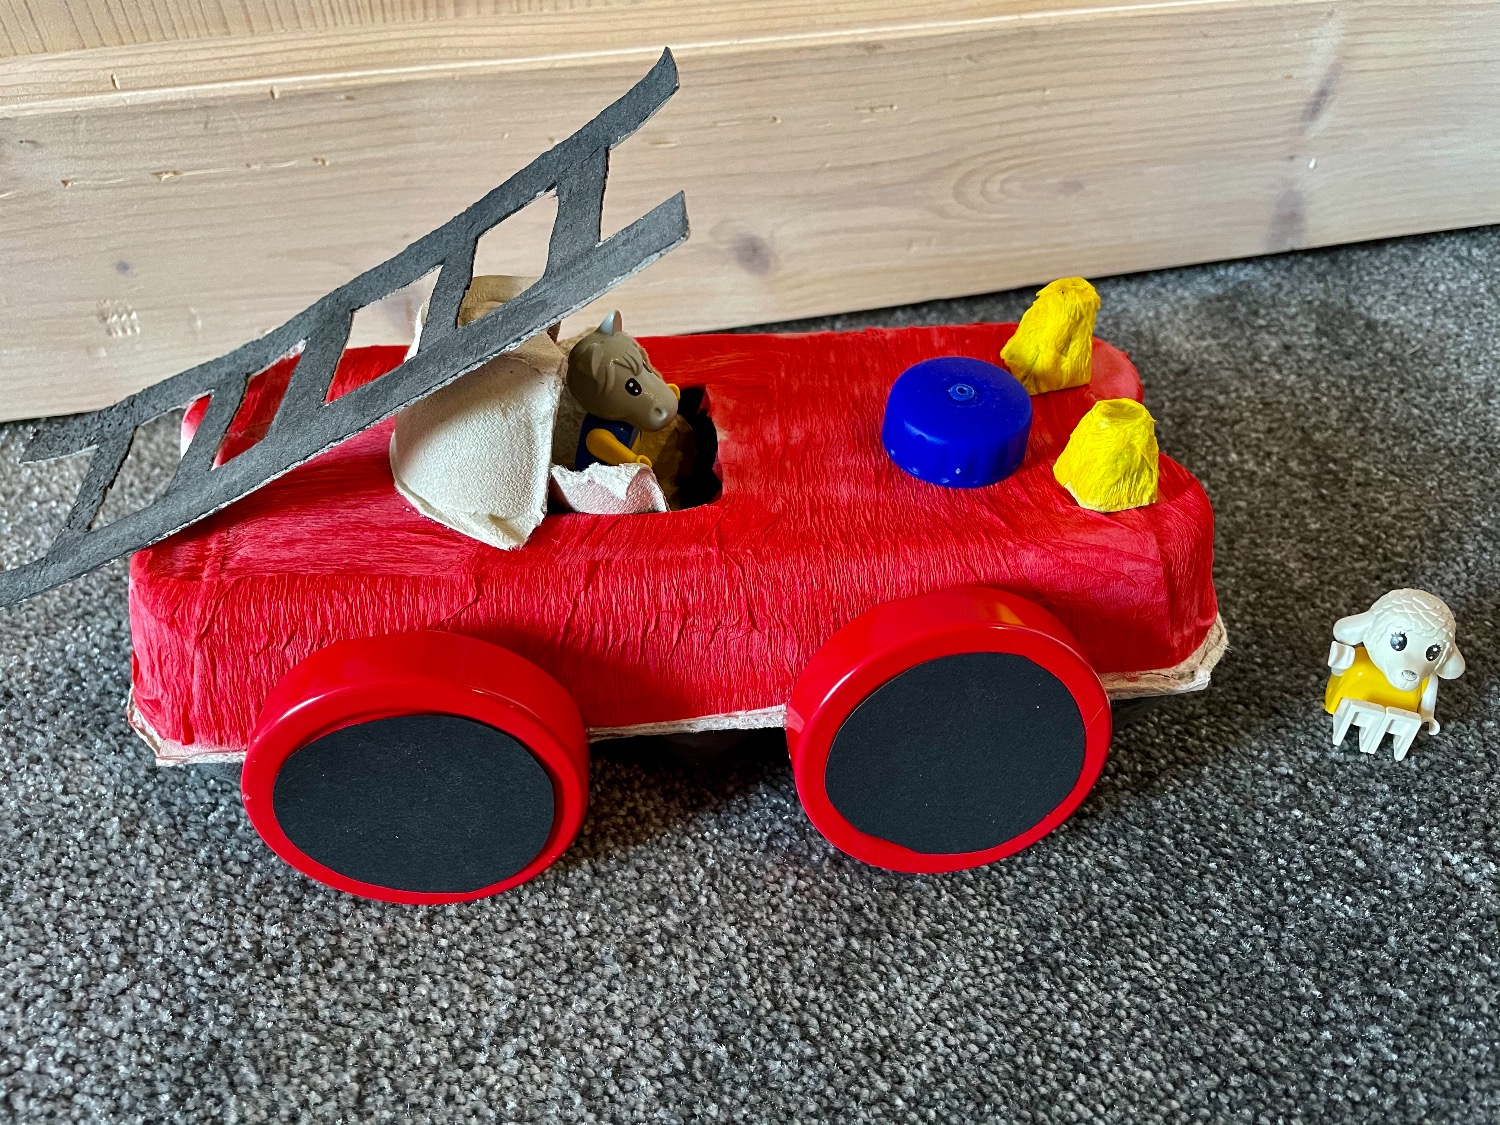 Titelbild zur Idee für die Beschäftigung mit Kindern '(679) Feuerwehrauto aus Eierkarton'